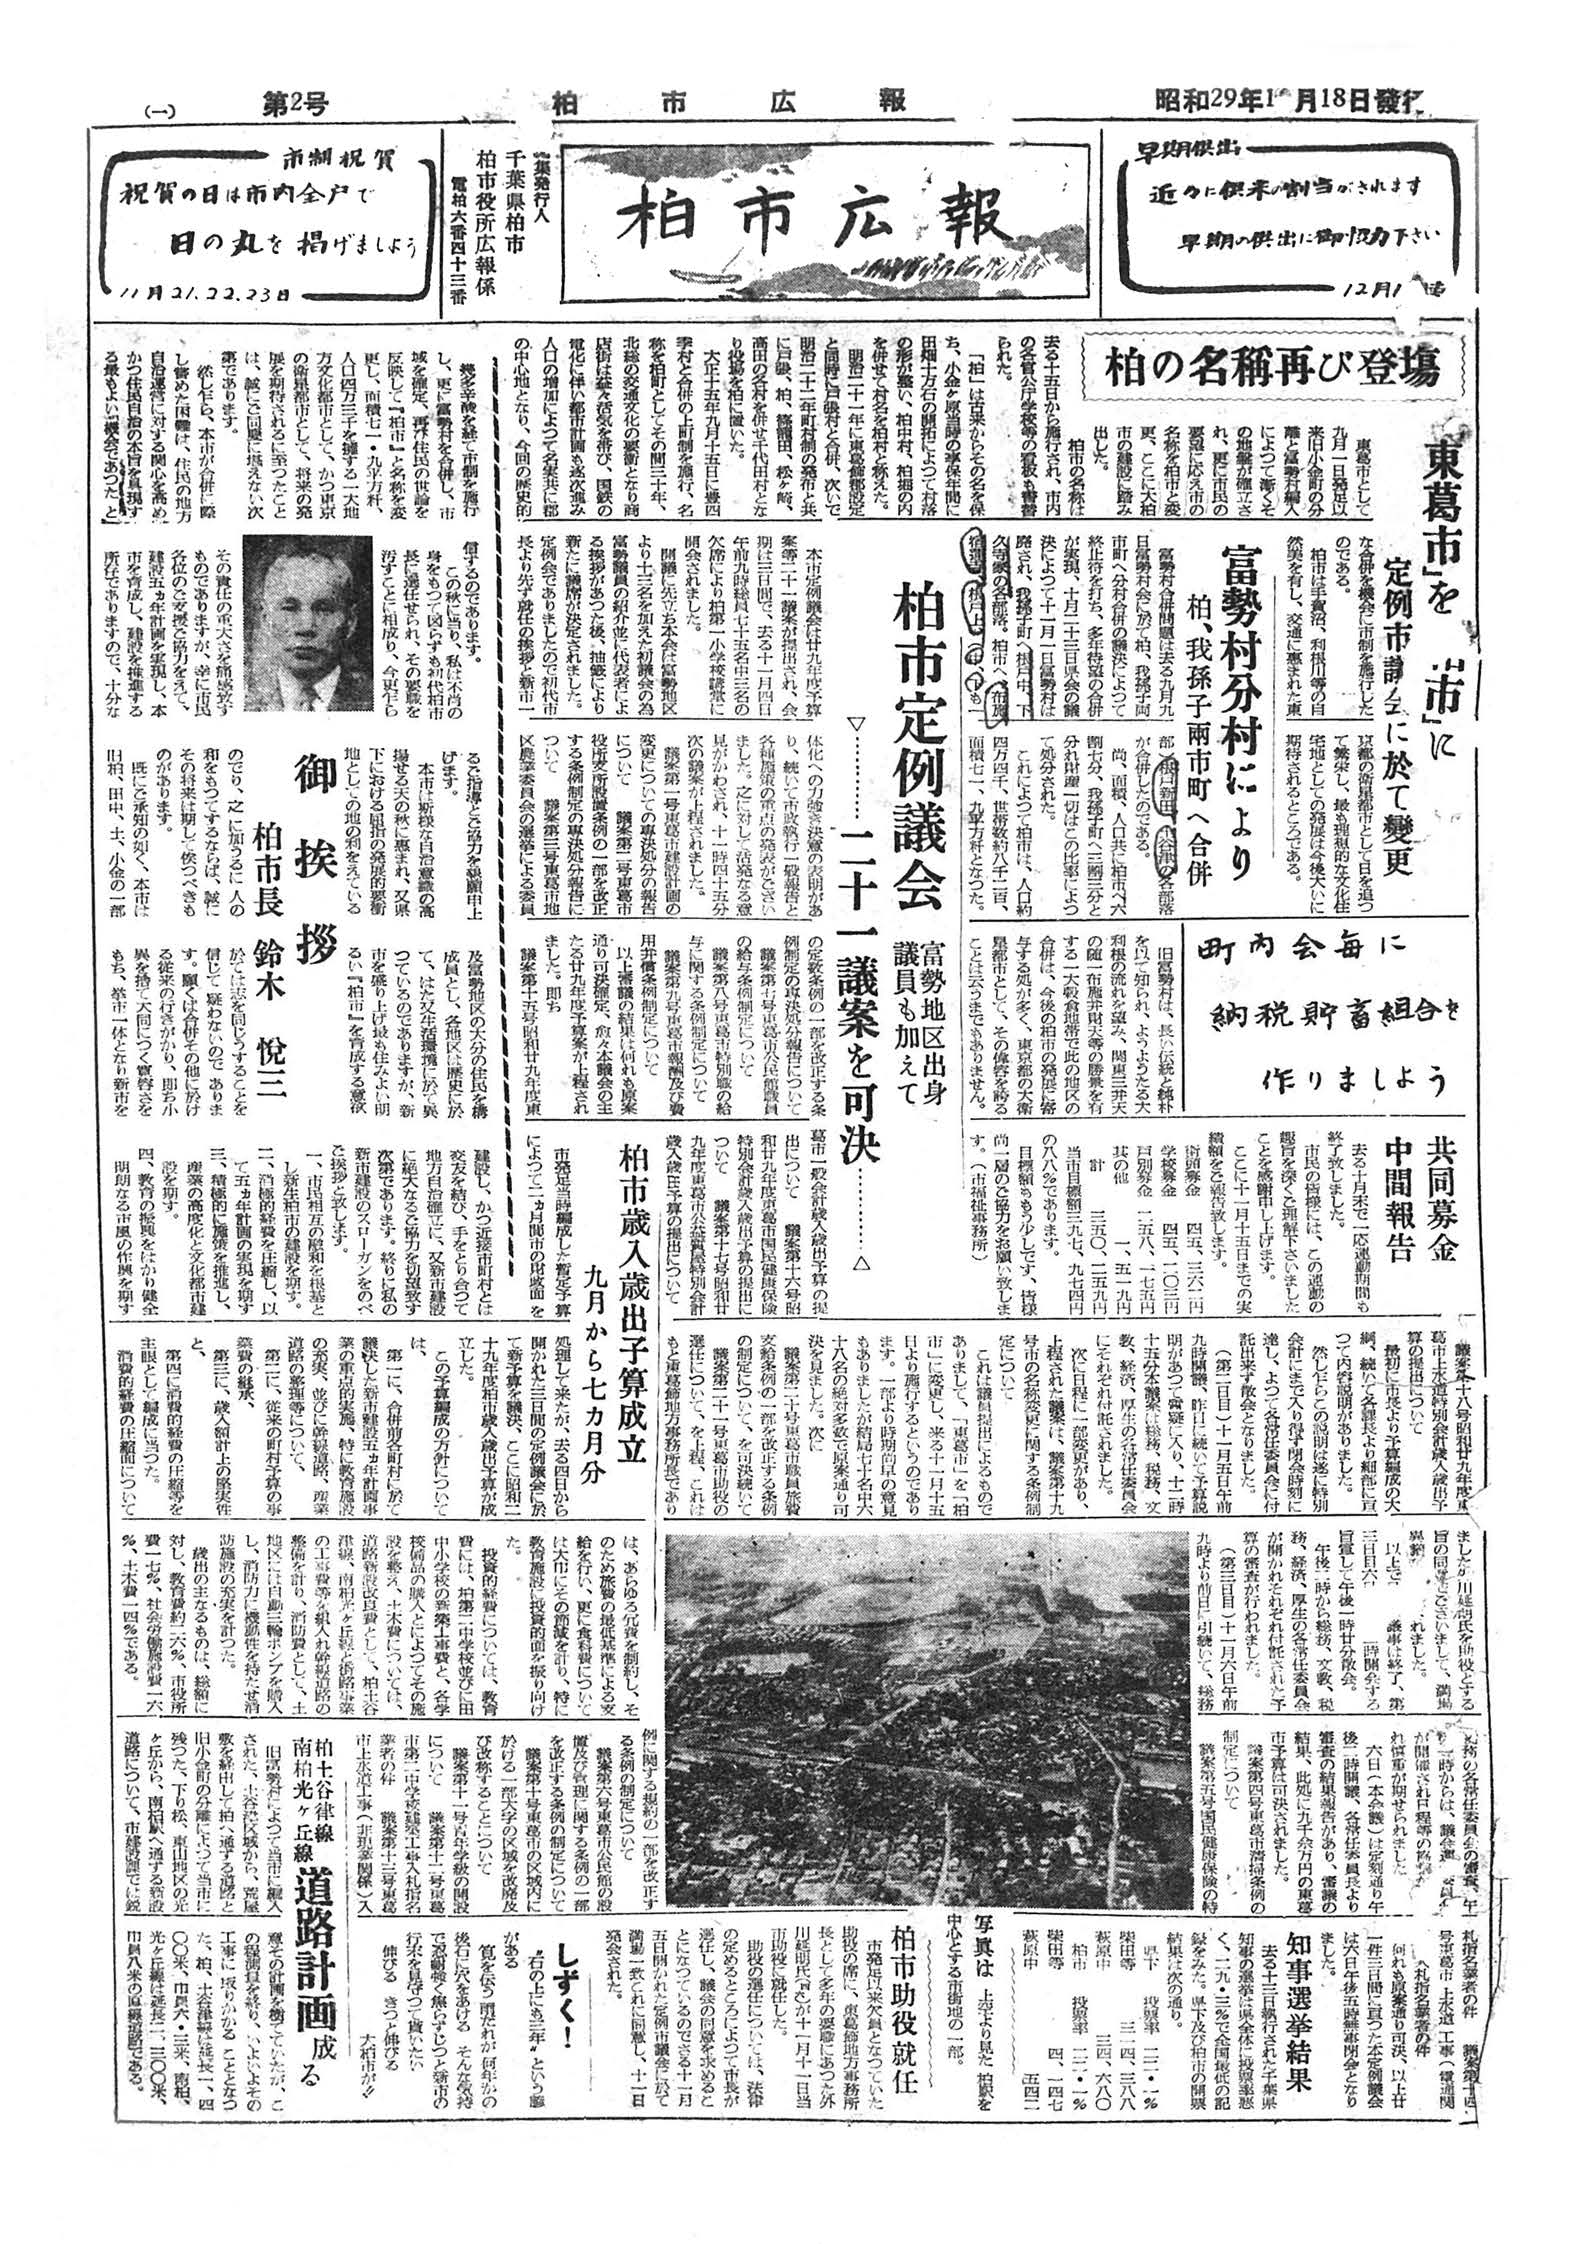 広報かしわ　昭和29年11月18日発行　2号